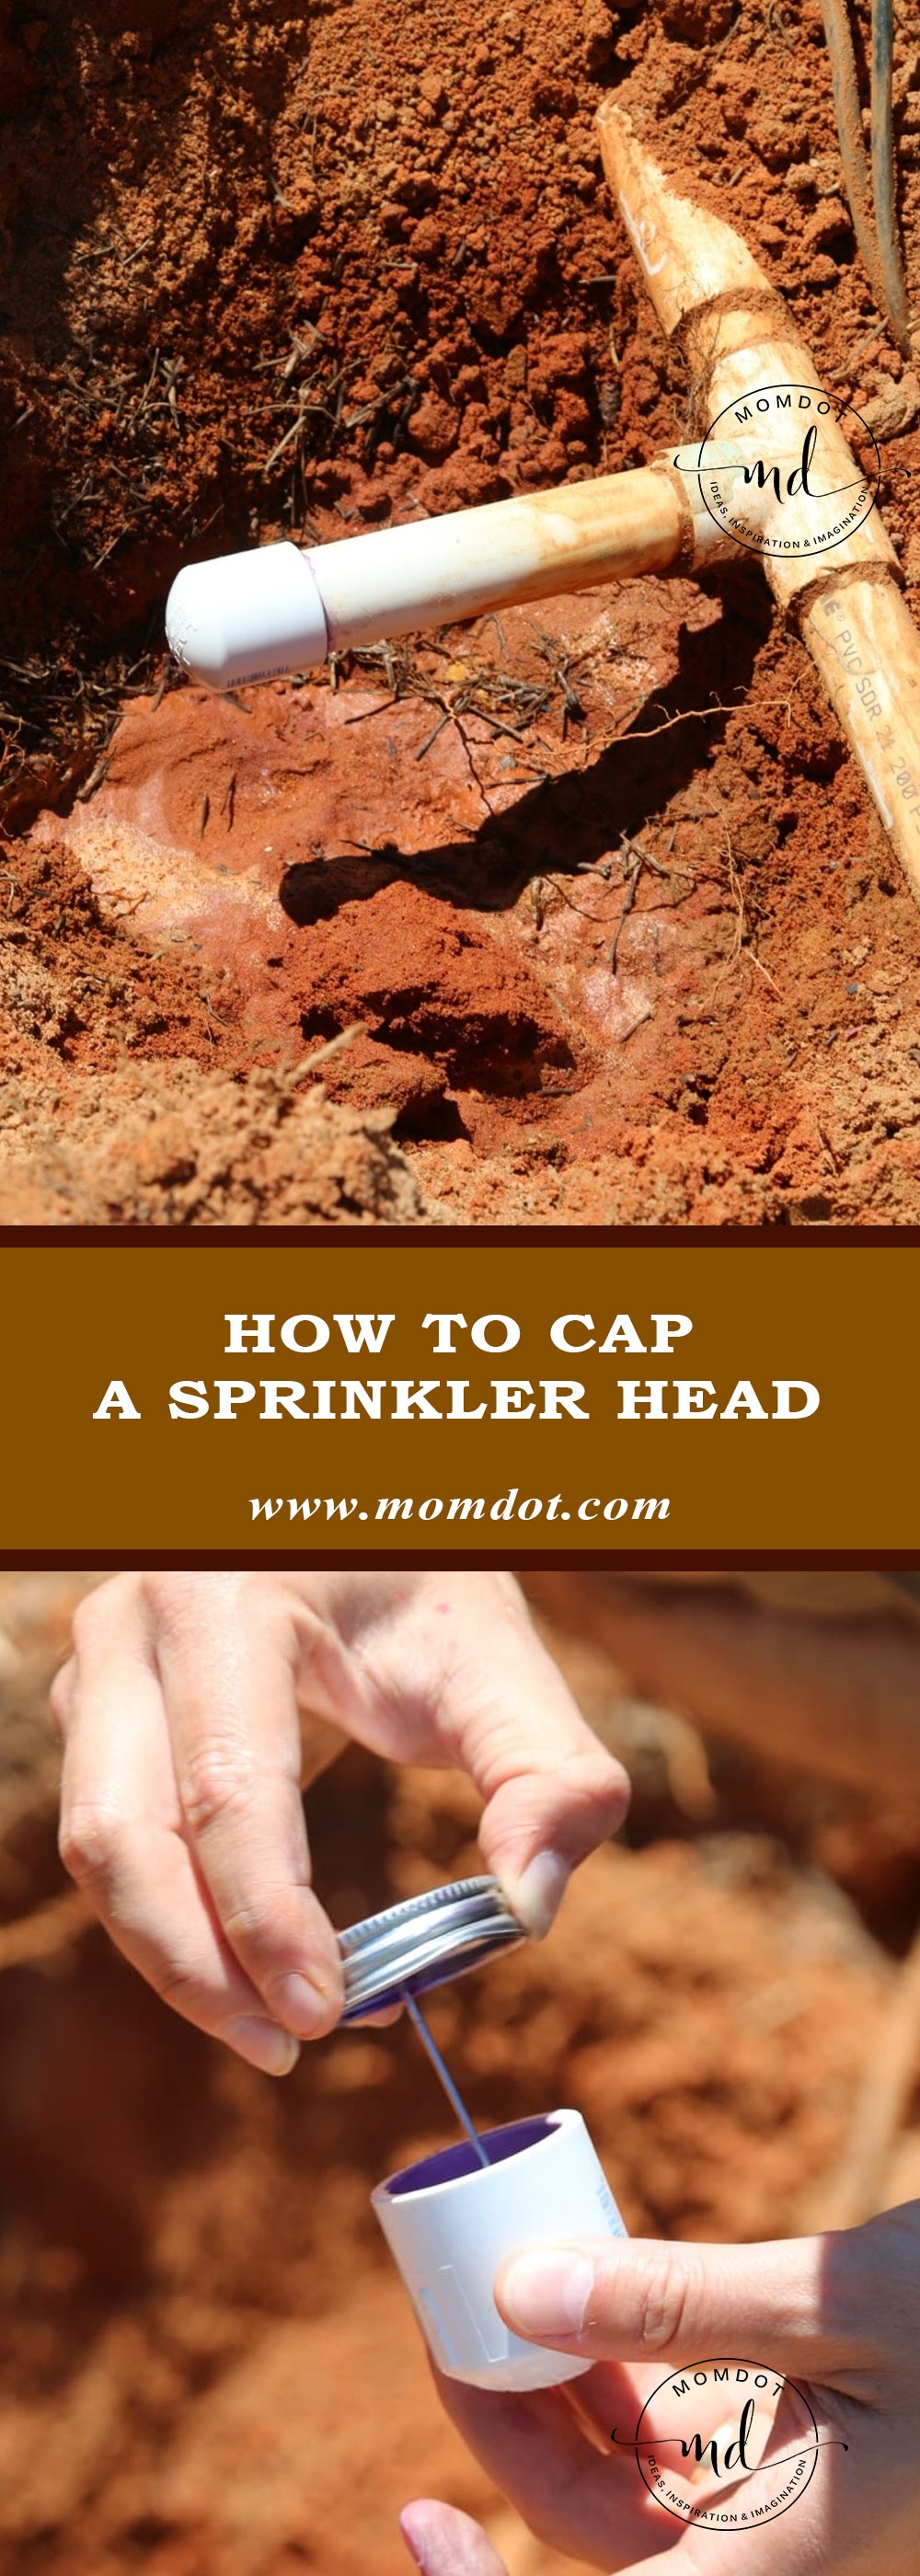 How to cap a Sprinkler head DIY